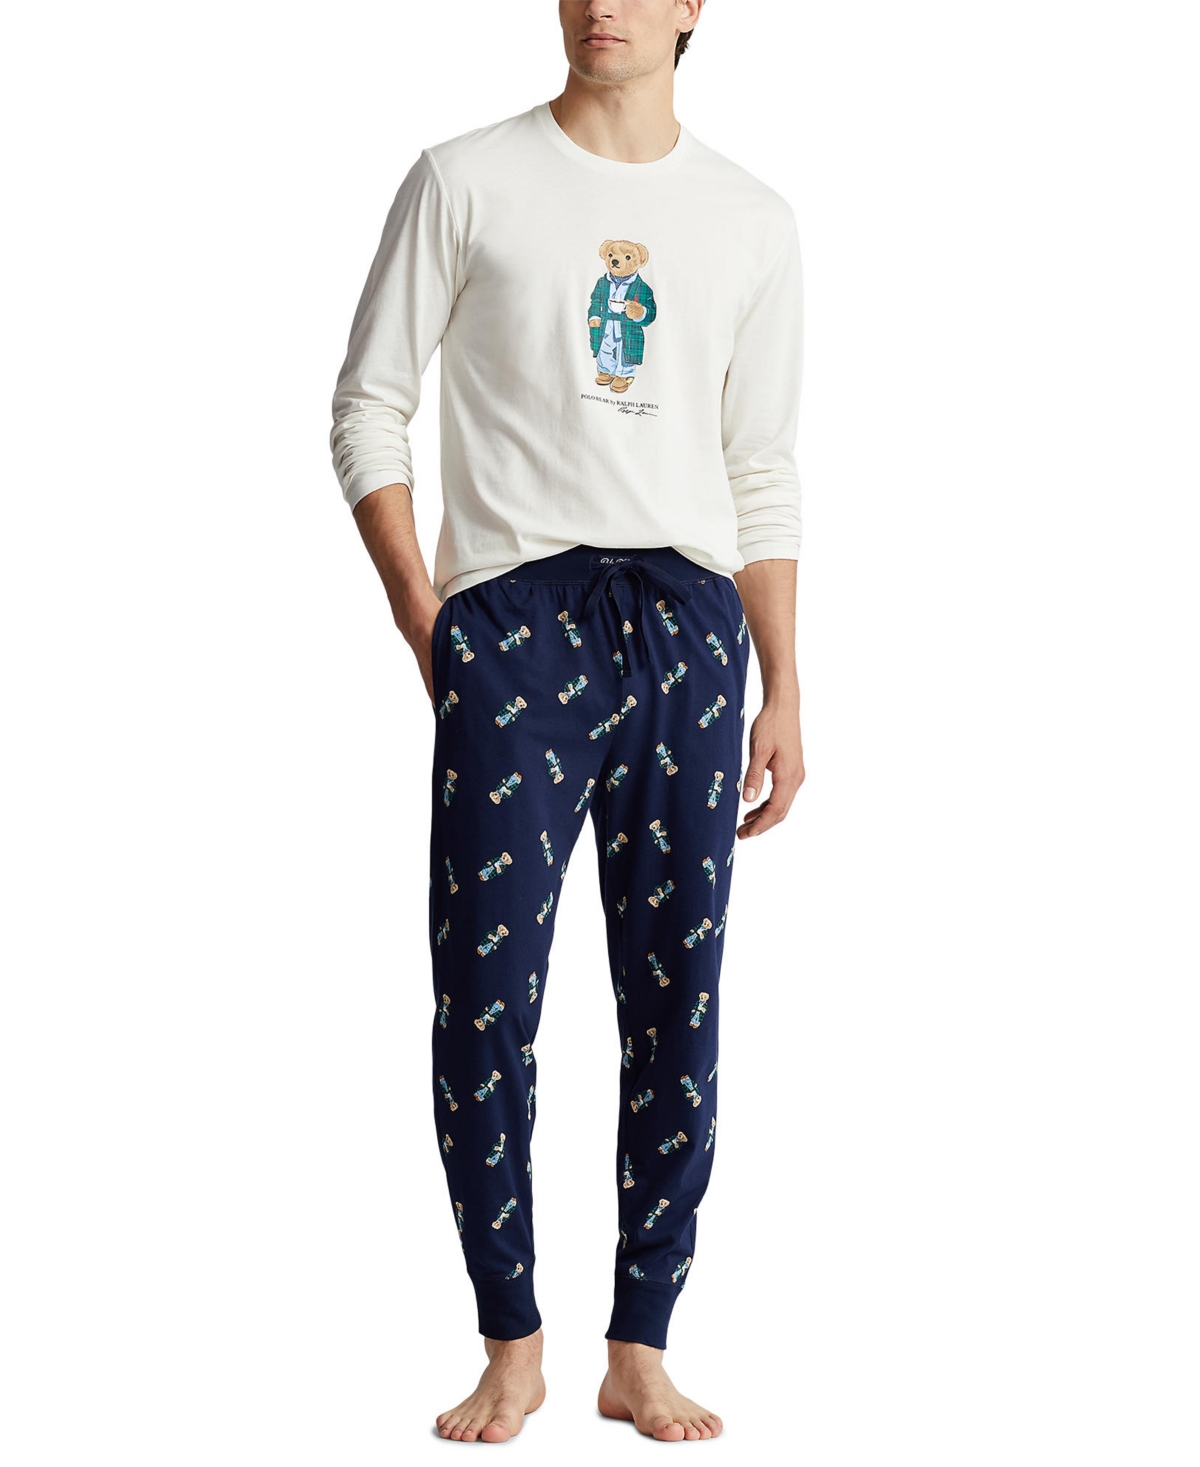 Men’s Jogger Pajama Set - Navy Bear